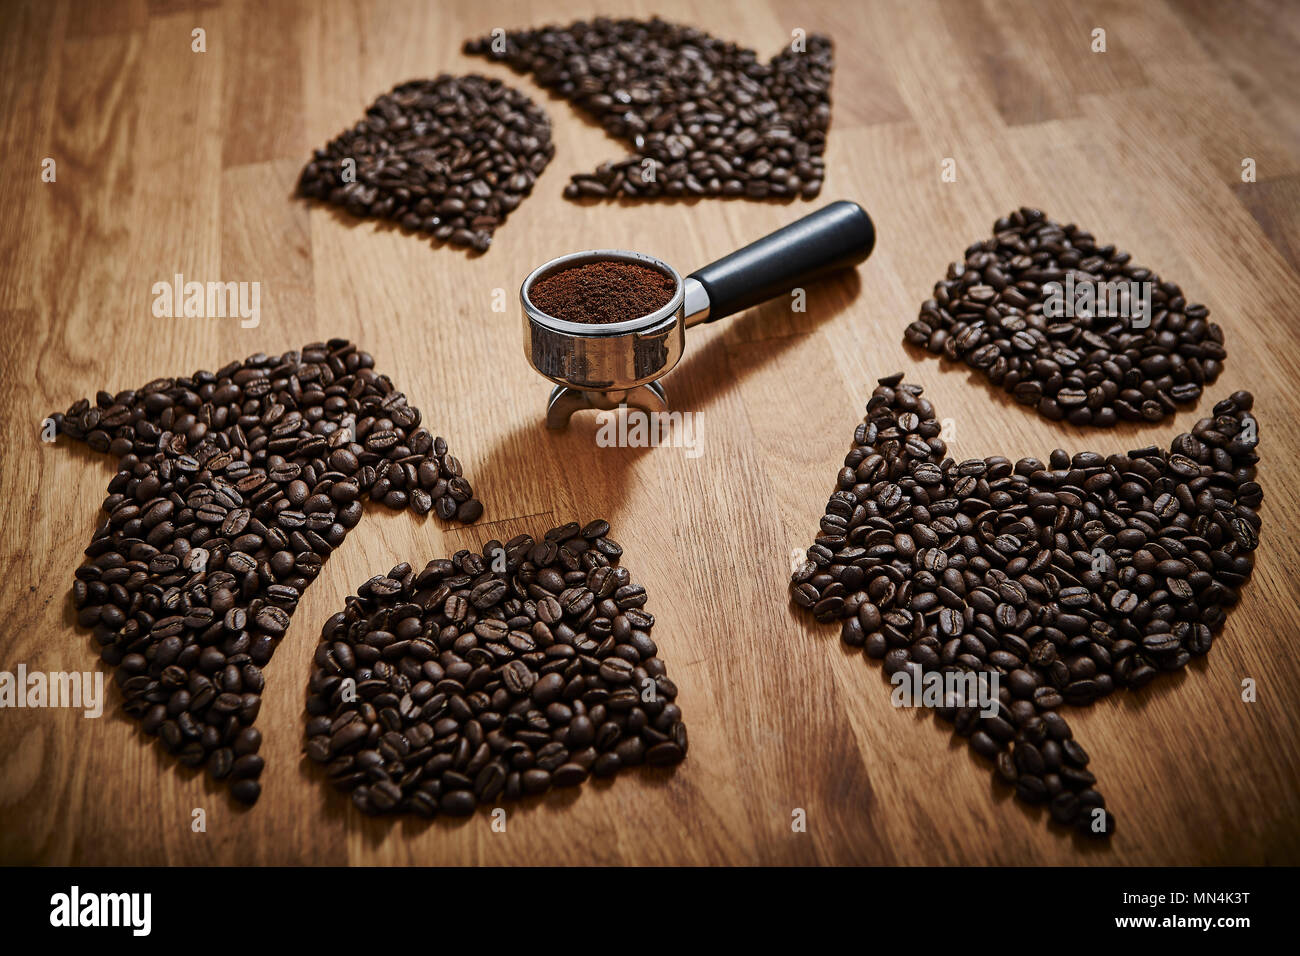 La formation de grains de café espresso autour de réutilisent le motif en portafilter Banque D'Images